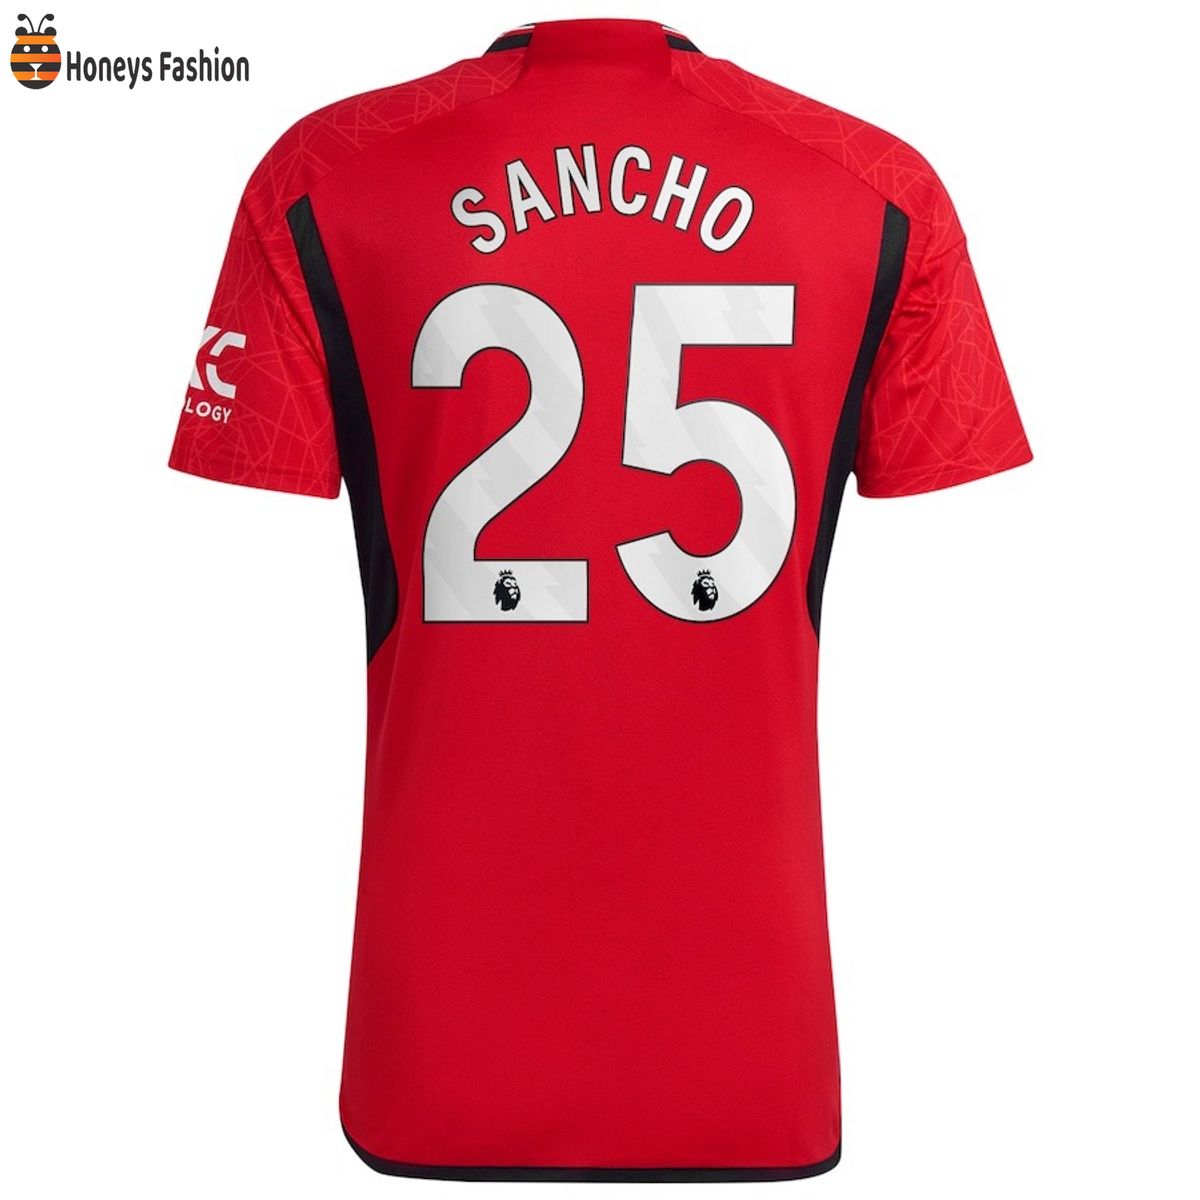 Sancho 25 Manchester United Premier League 23-24 Jersey